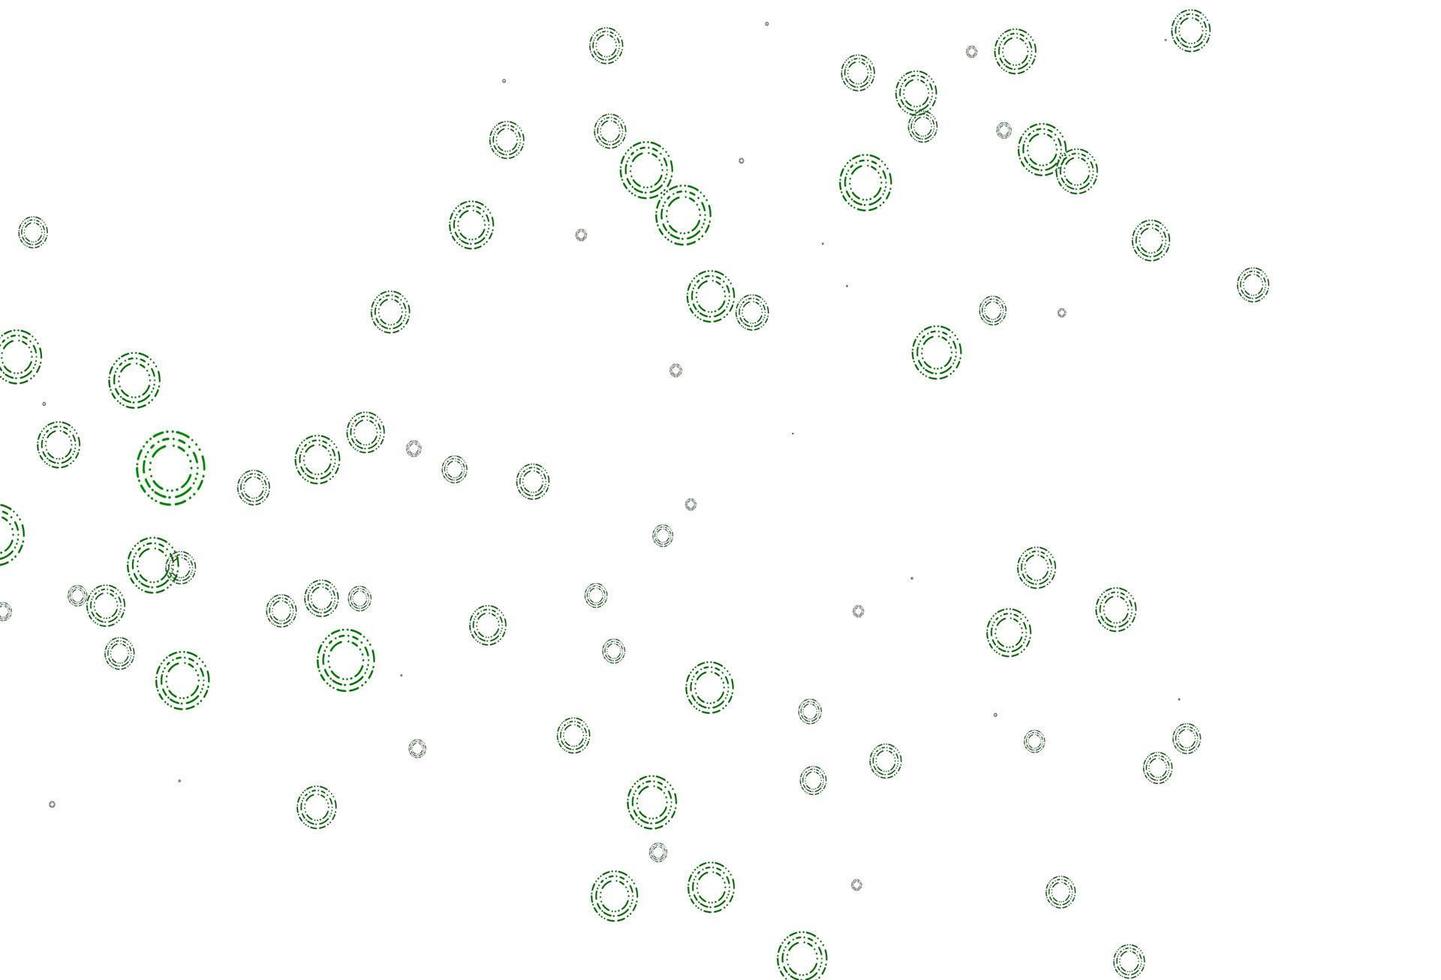 plantilla de vector verde claro con círculos.